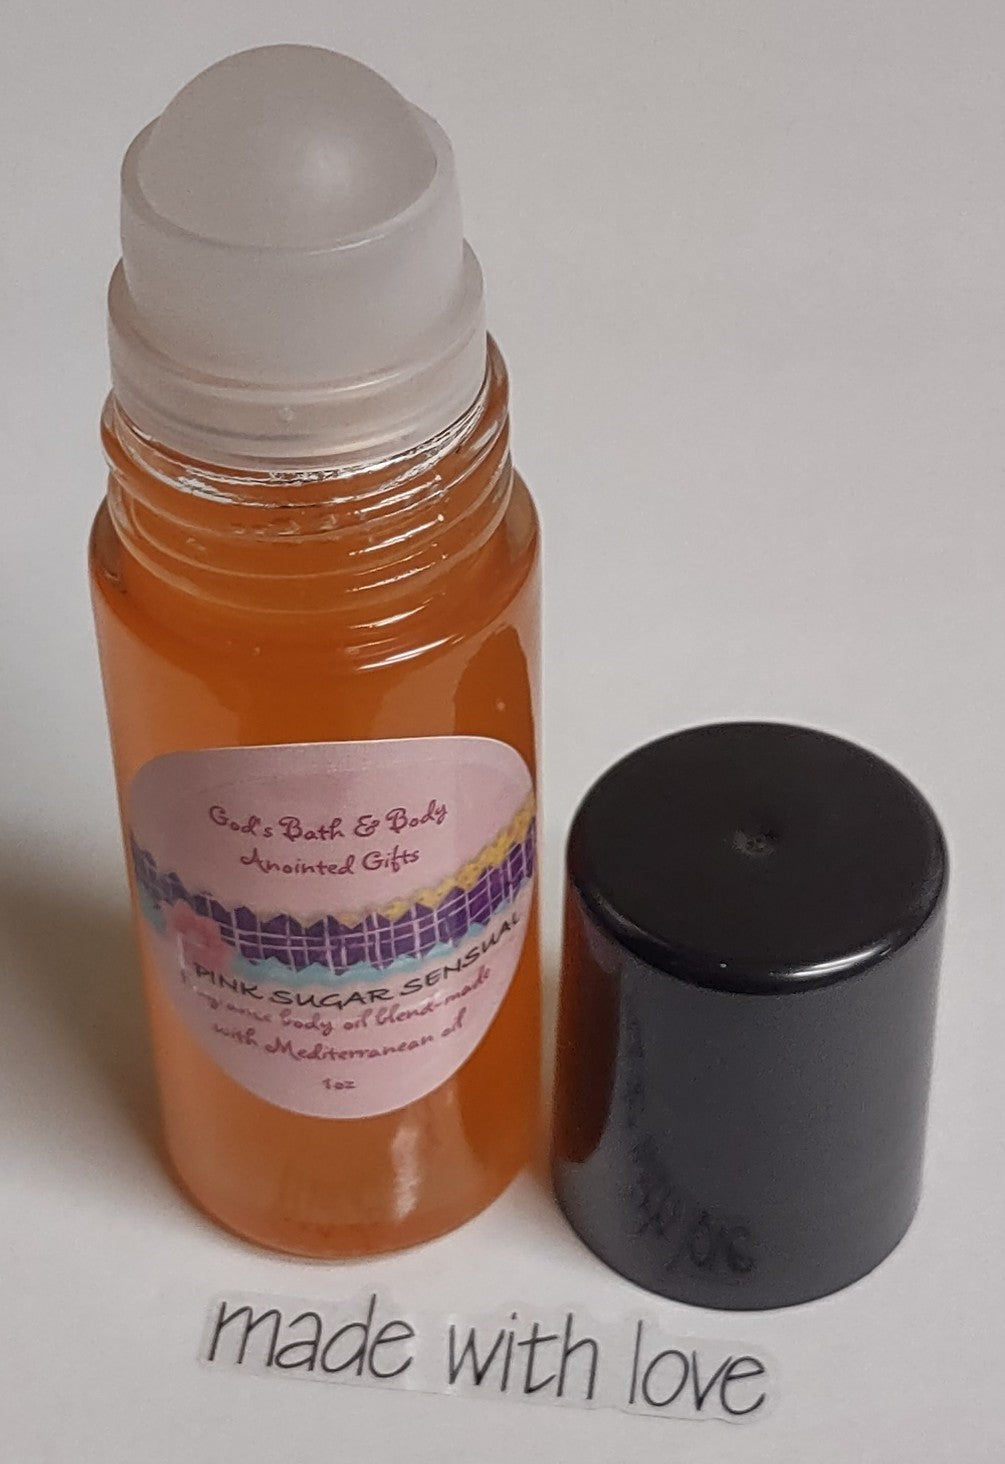 Pink Sugar Hydrating Body Oil